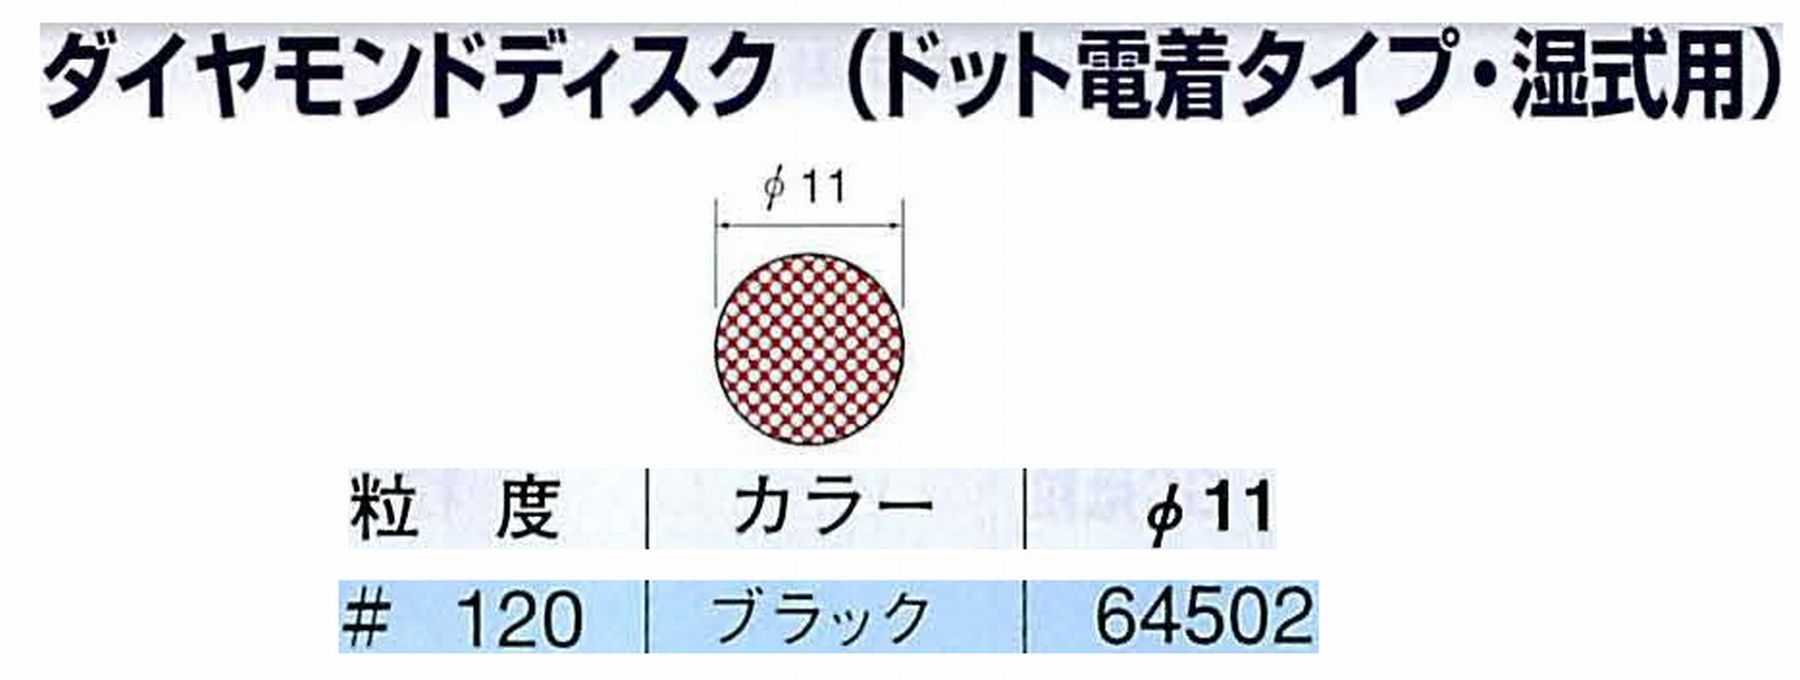 ナカニシ/NAKANISHI アングルグラインダ(電動・エアー) アングルアタッチメント専用工具 ダイヤモンドディスク(ドット電着タイプ・湿式用) 64502